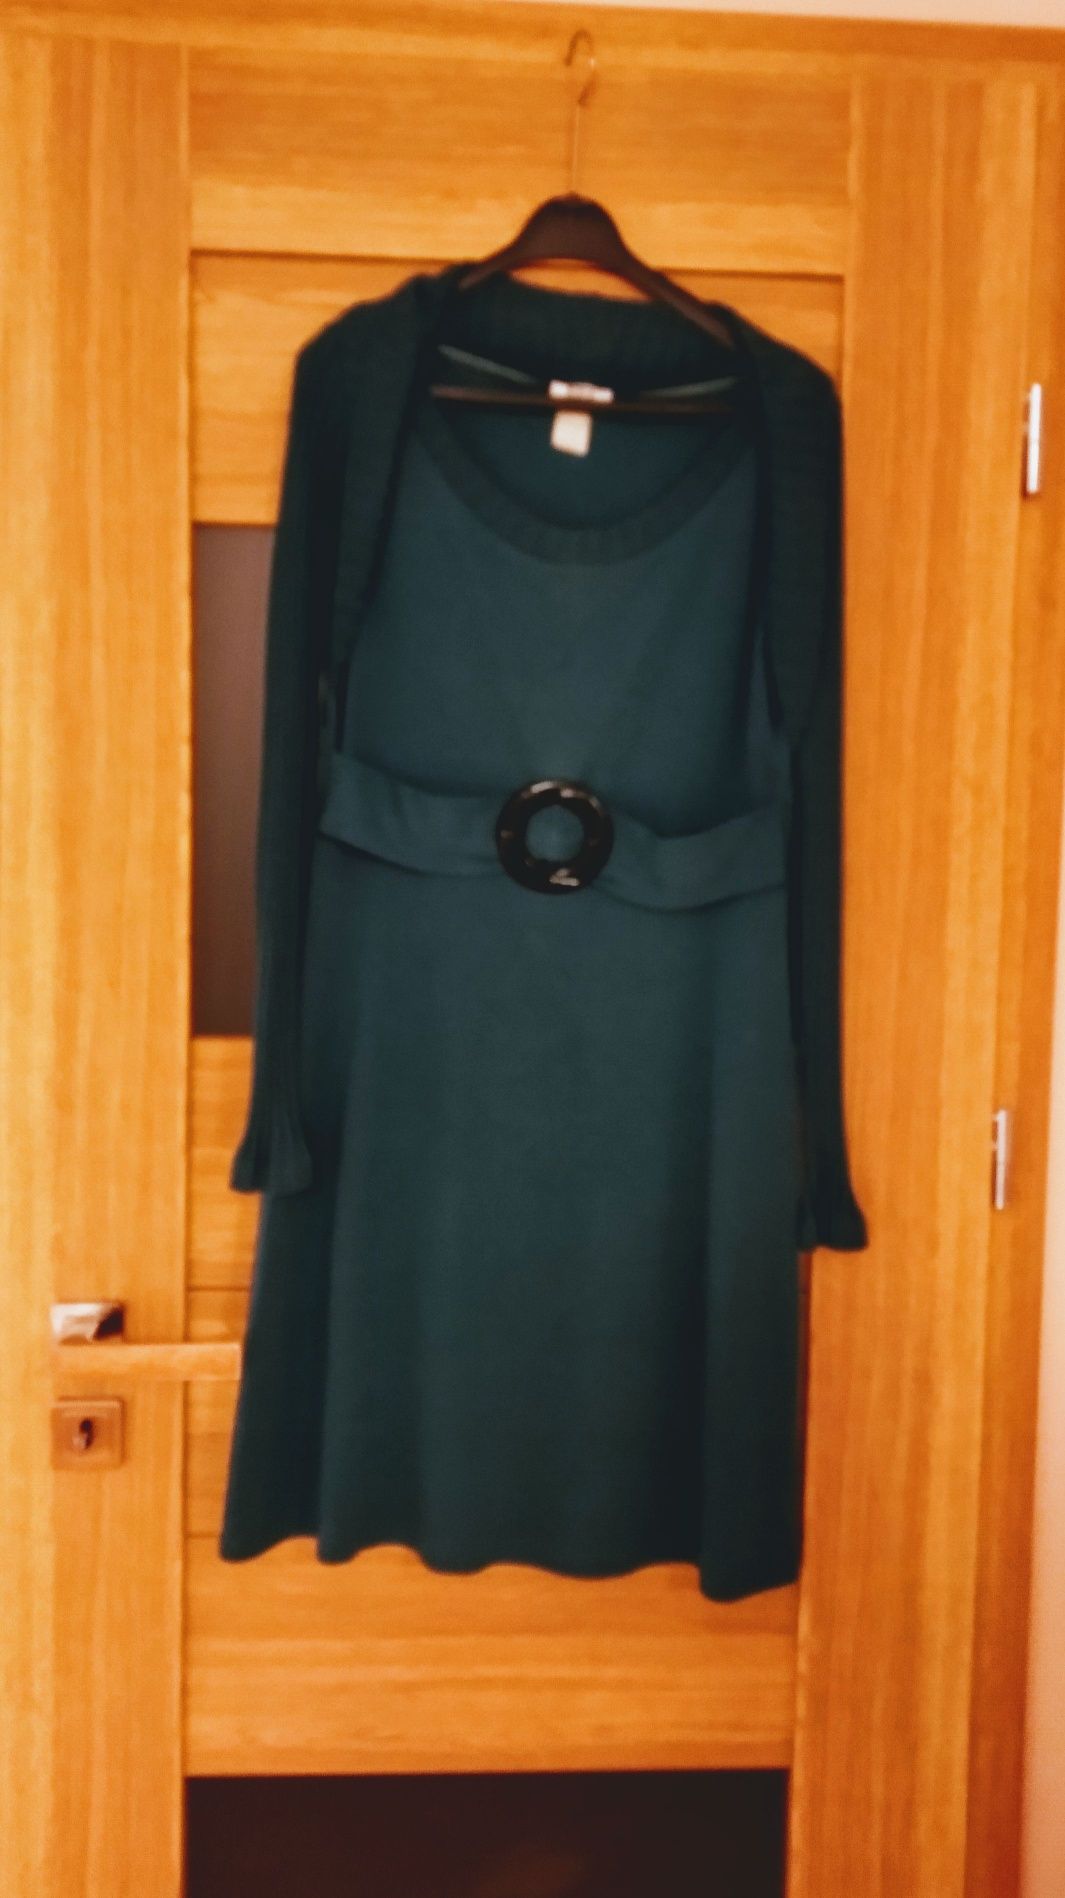 Sukienka z bolerkiem turkus rozmiar 36-38